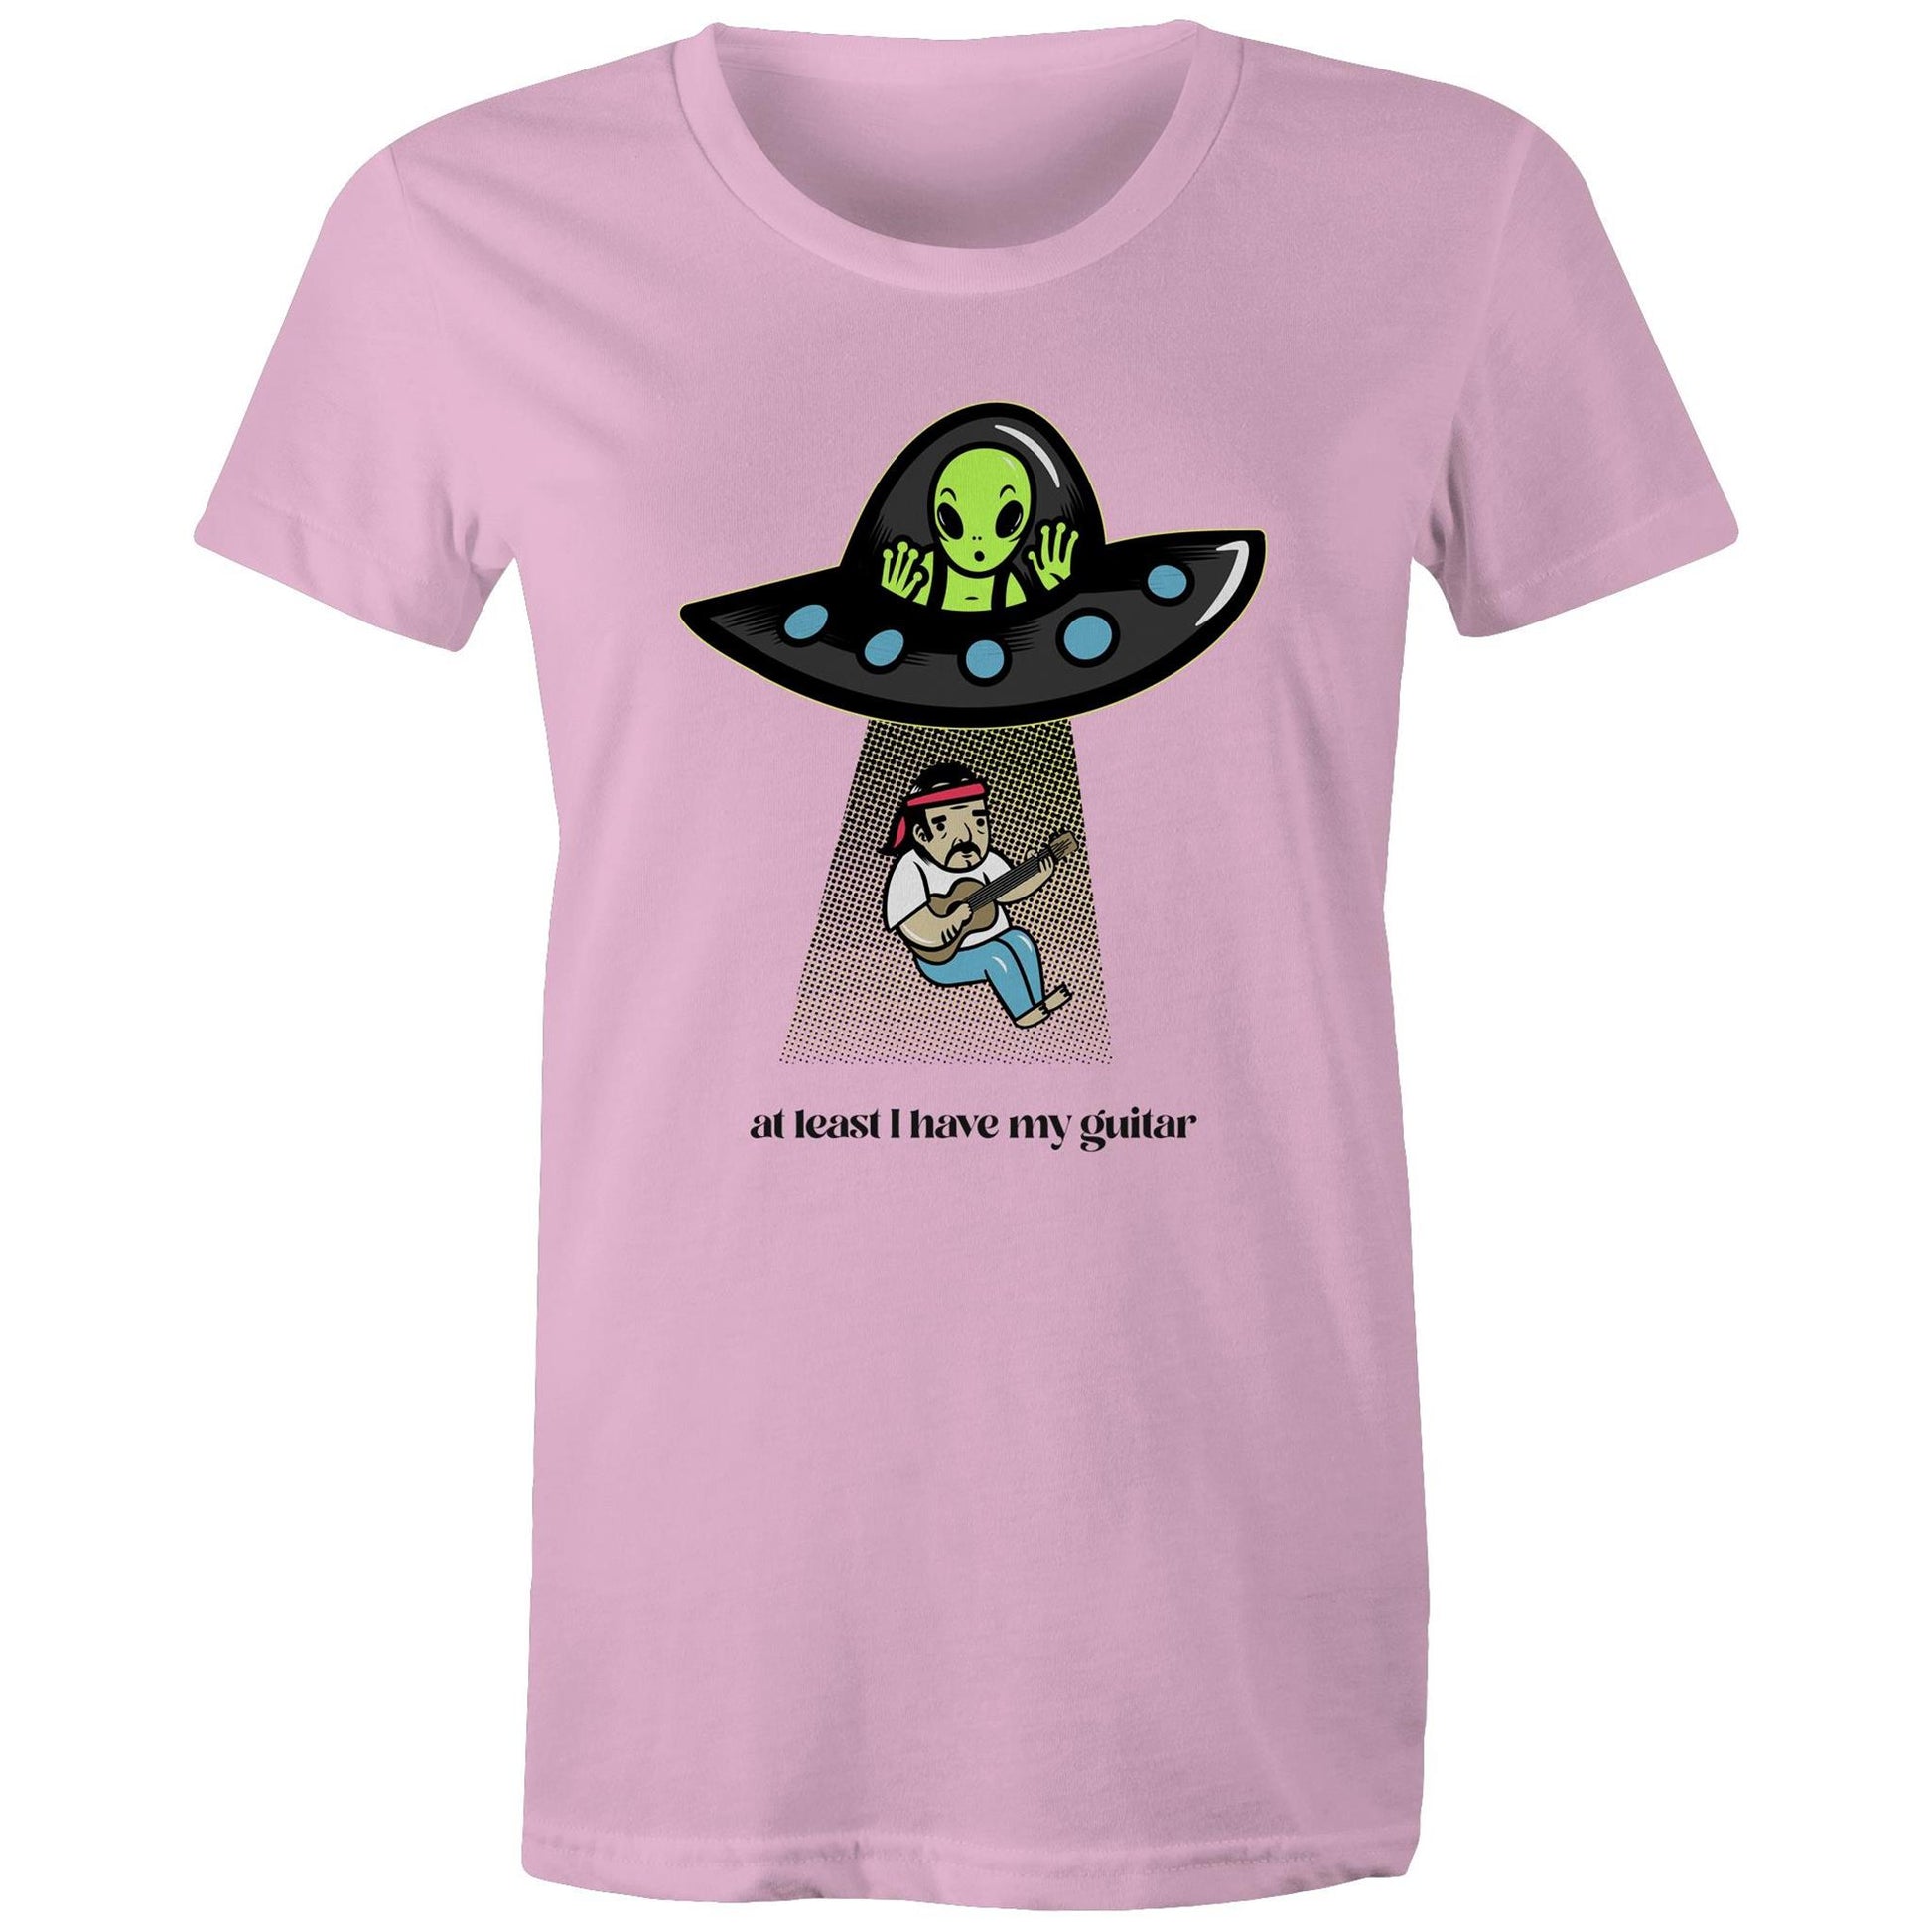 Guitarist Alien Abduction - Womens T-shirt Pink Womens T-shirt Music Sci Fi